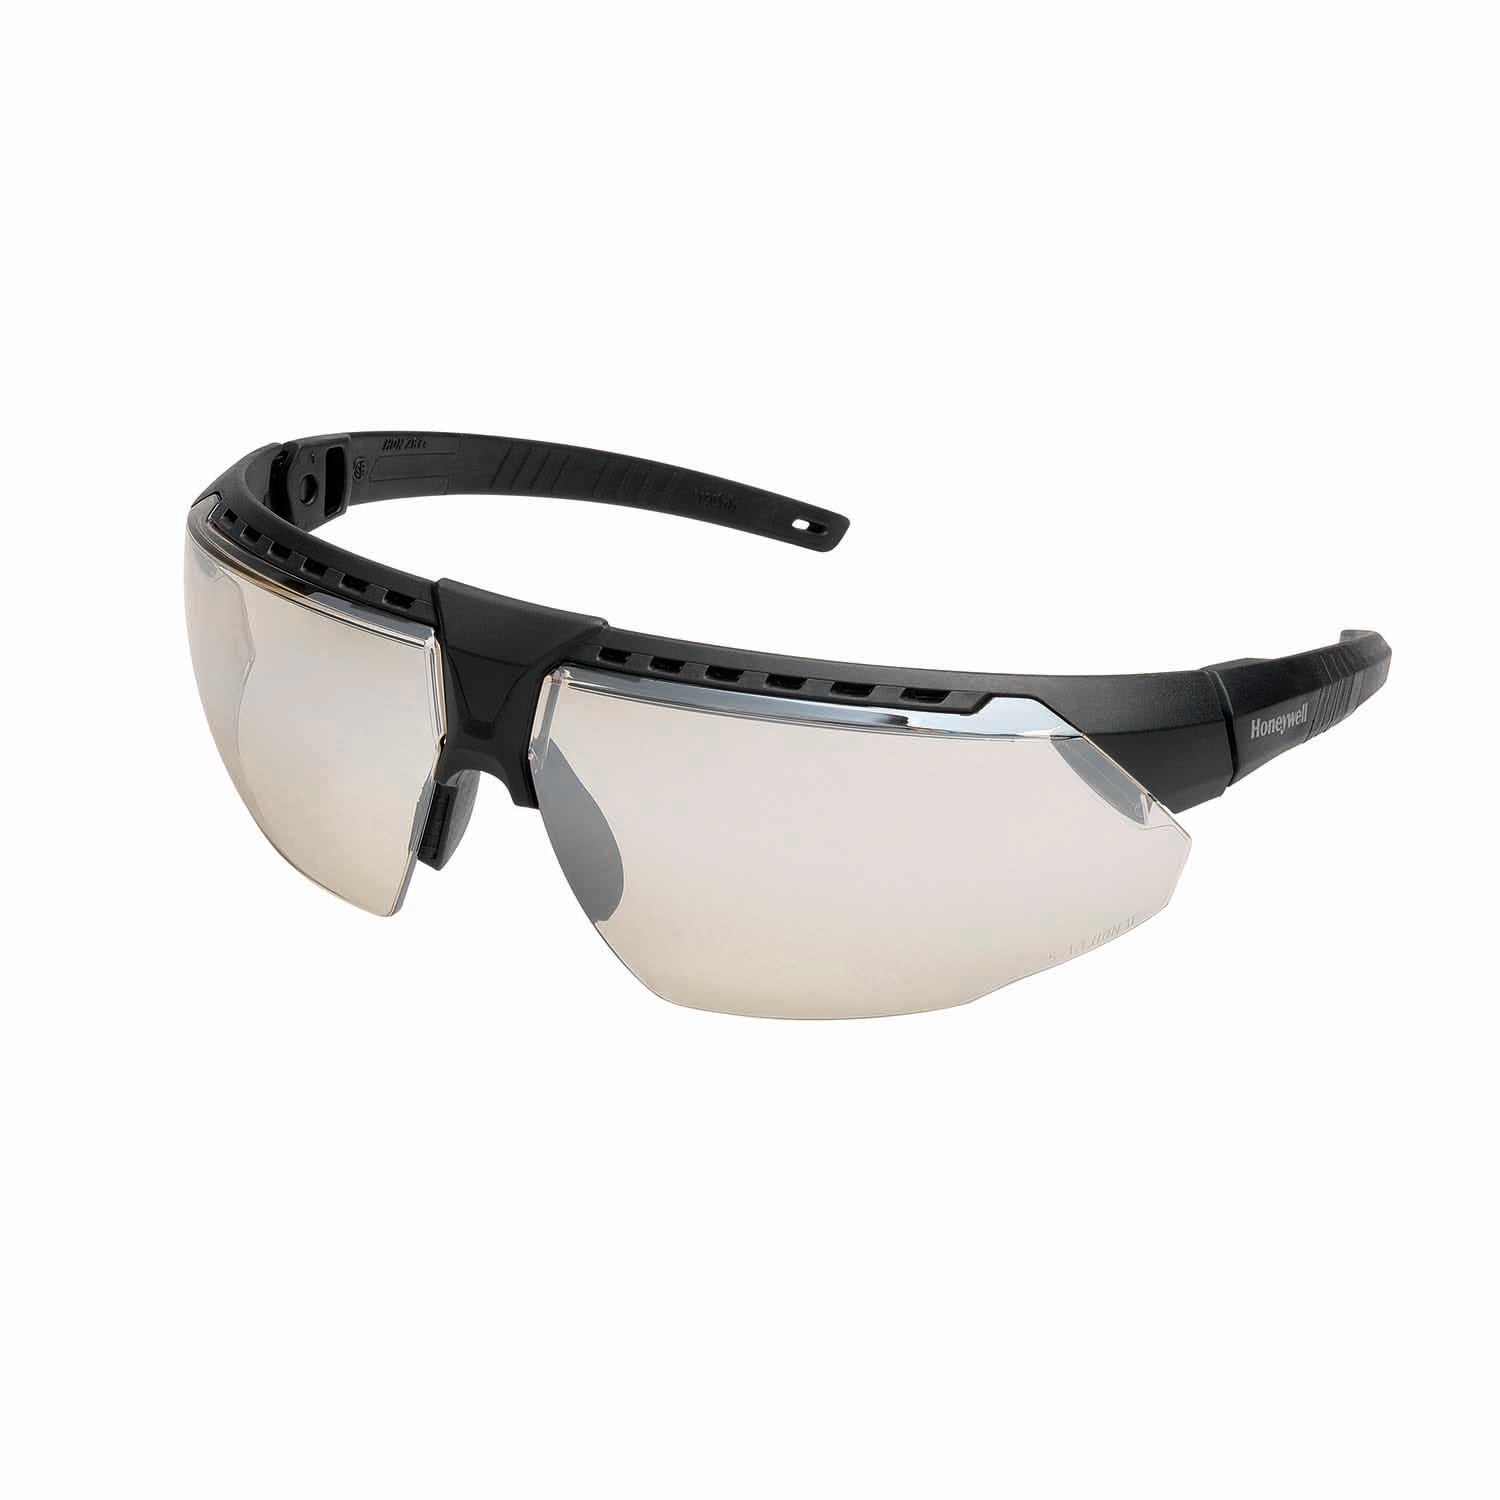 Honeywell AVATAR Safety Glasses Black Frame I/O Lens